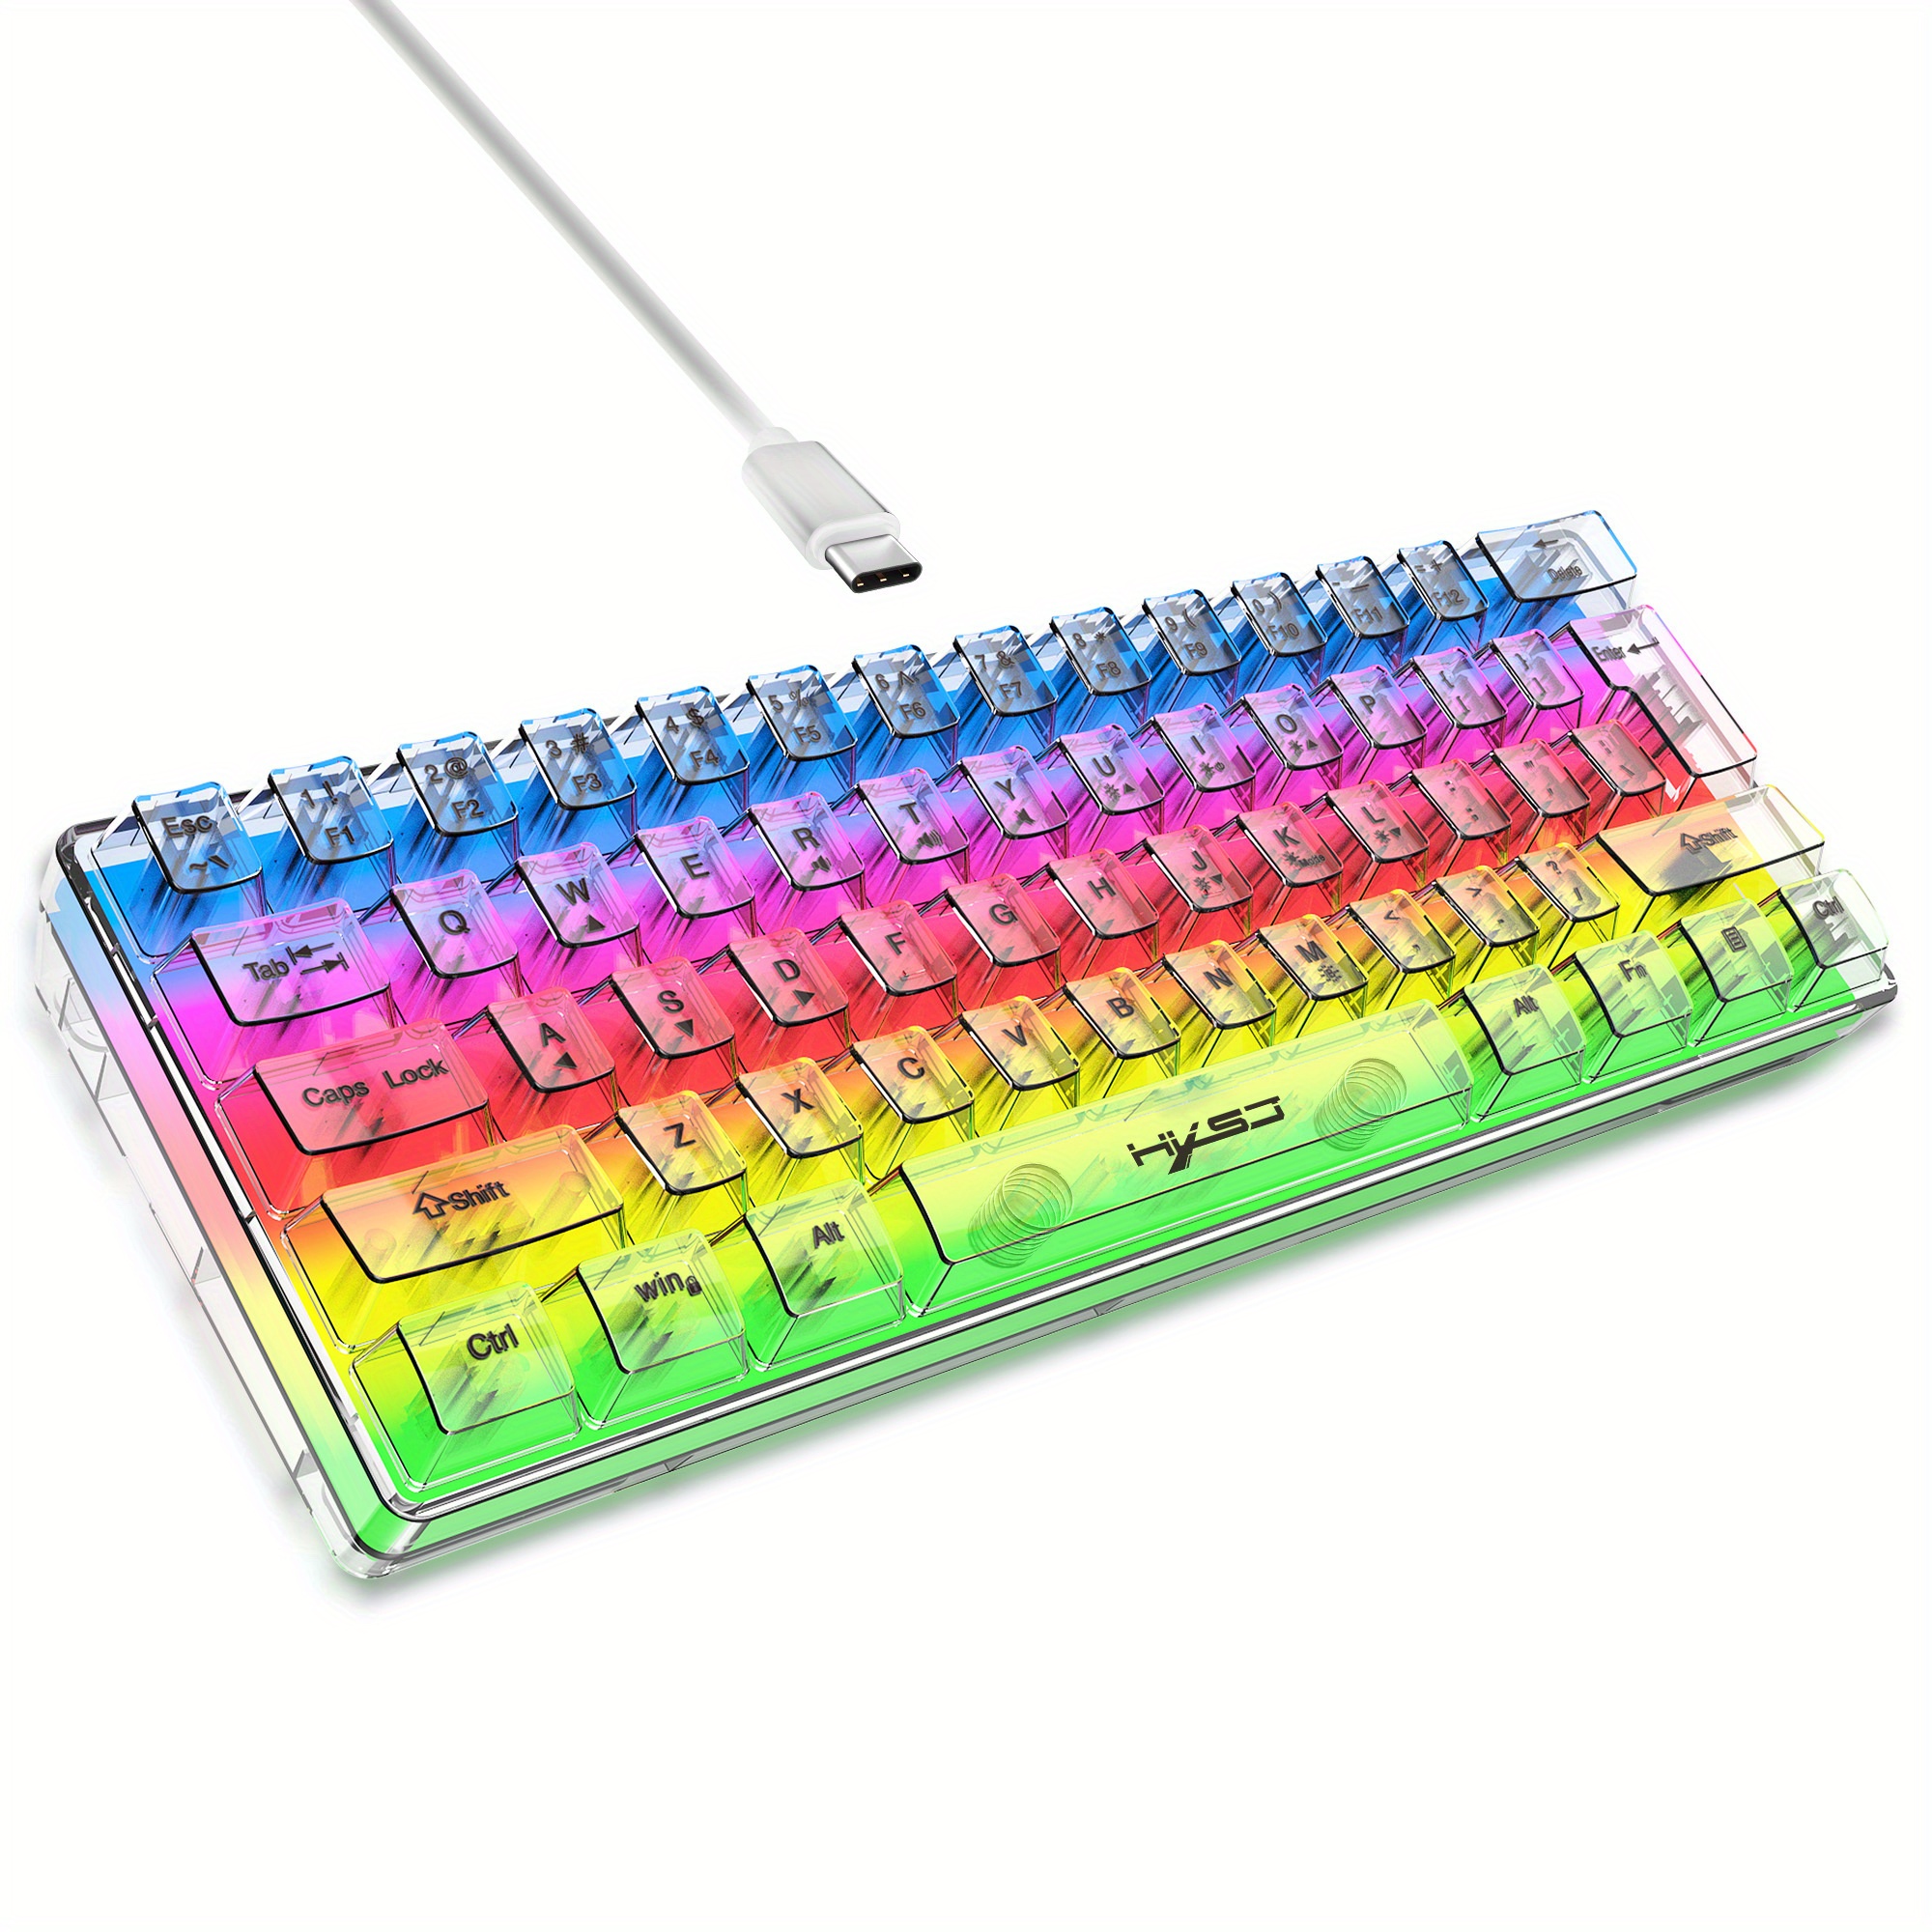 TECURS WK008 wired membrane keyboard LED light gaming keyboard